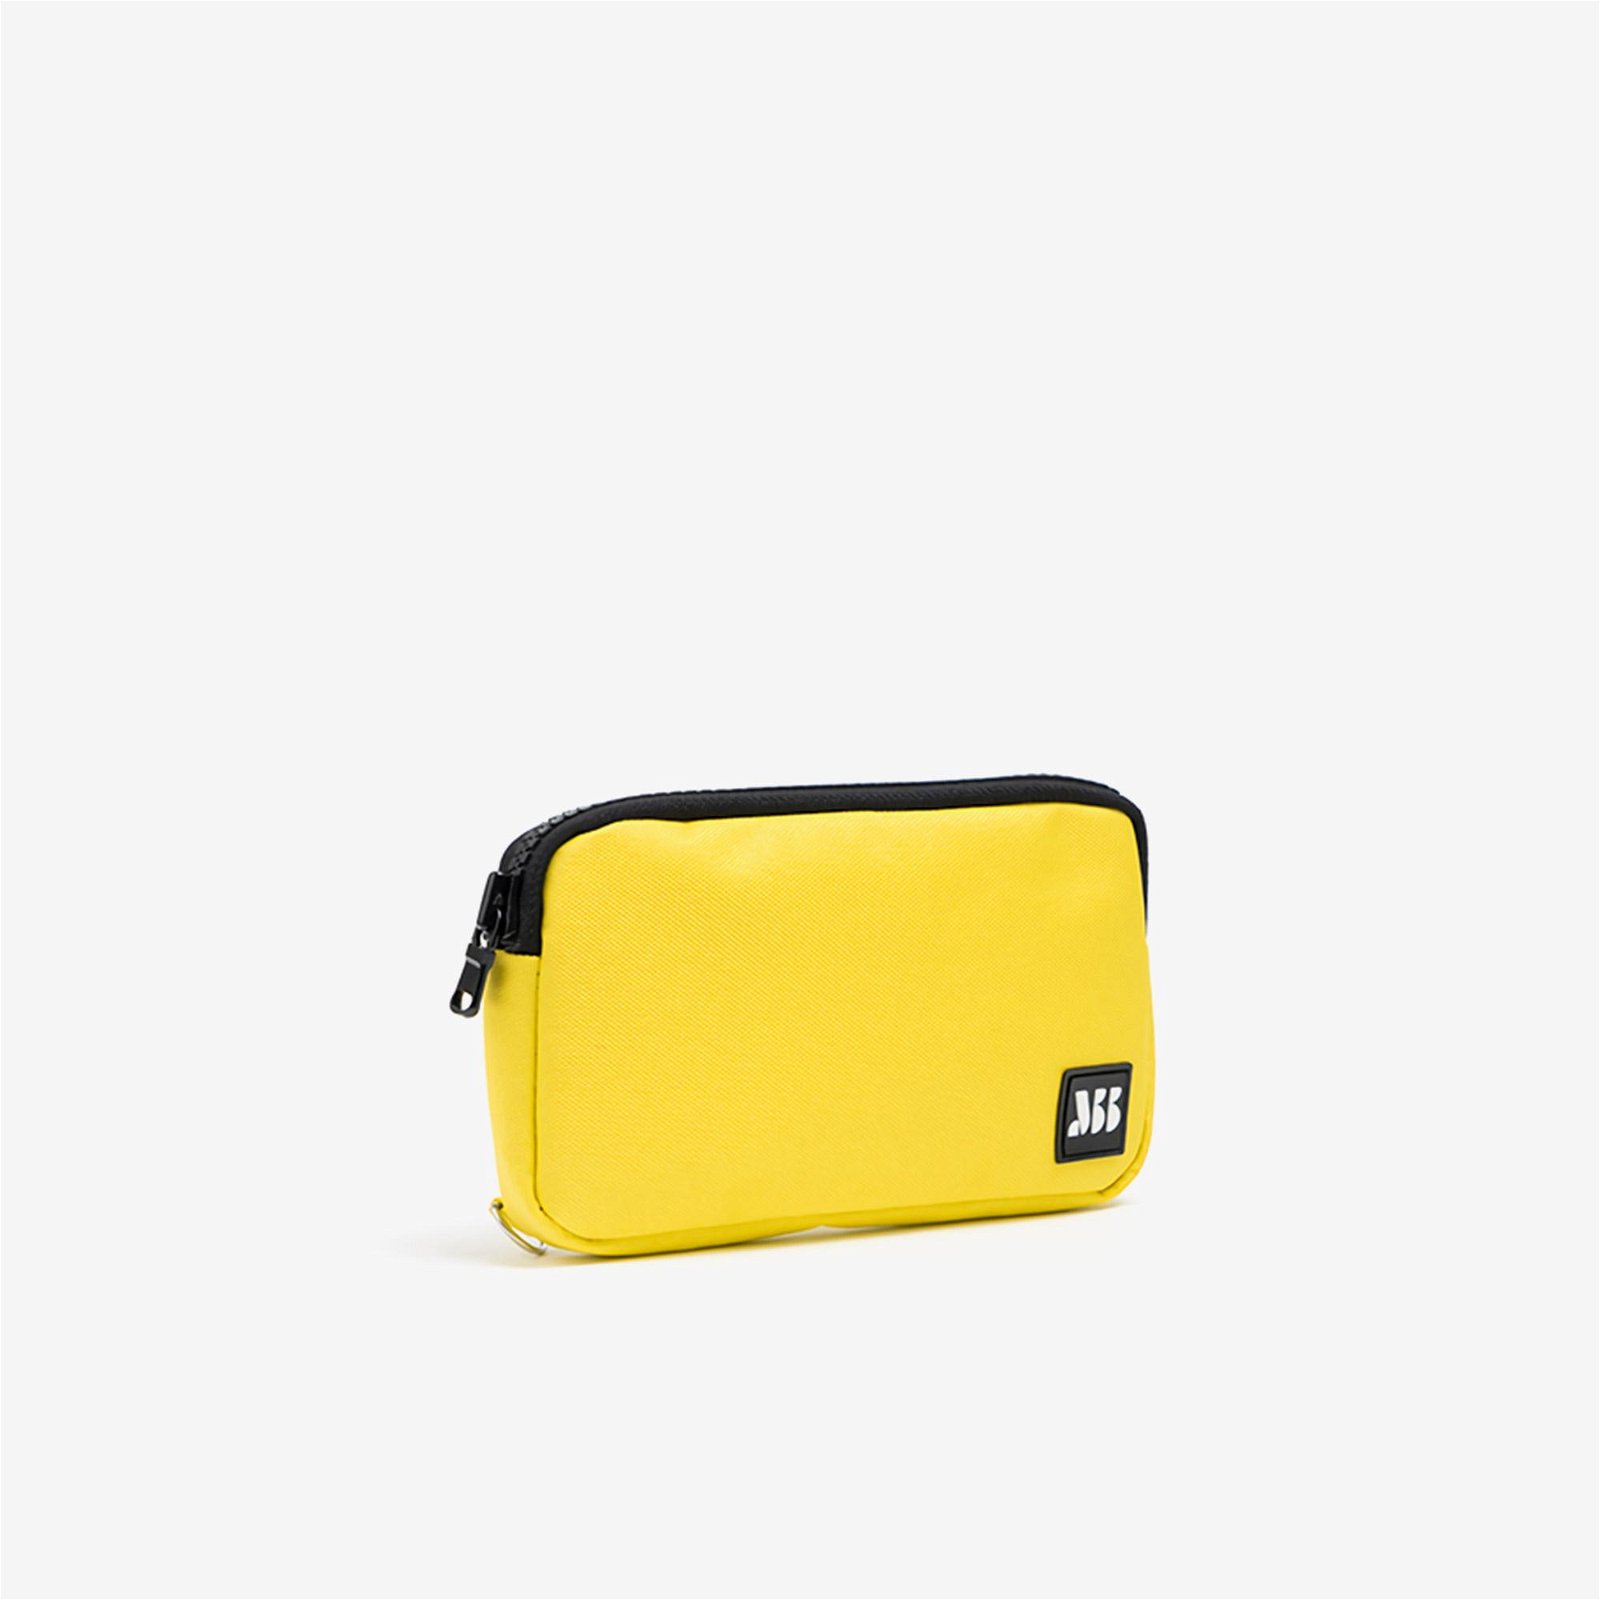 MuniBum Bag Yellow Phone Bag